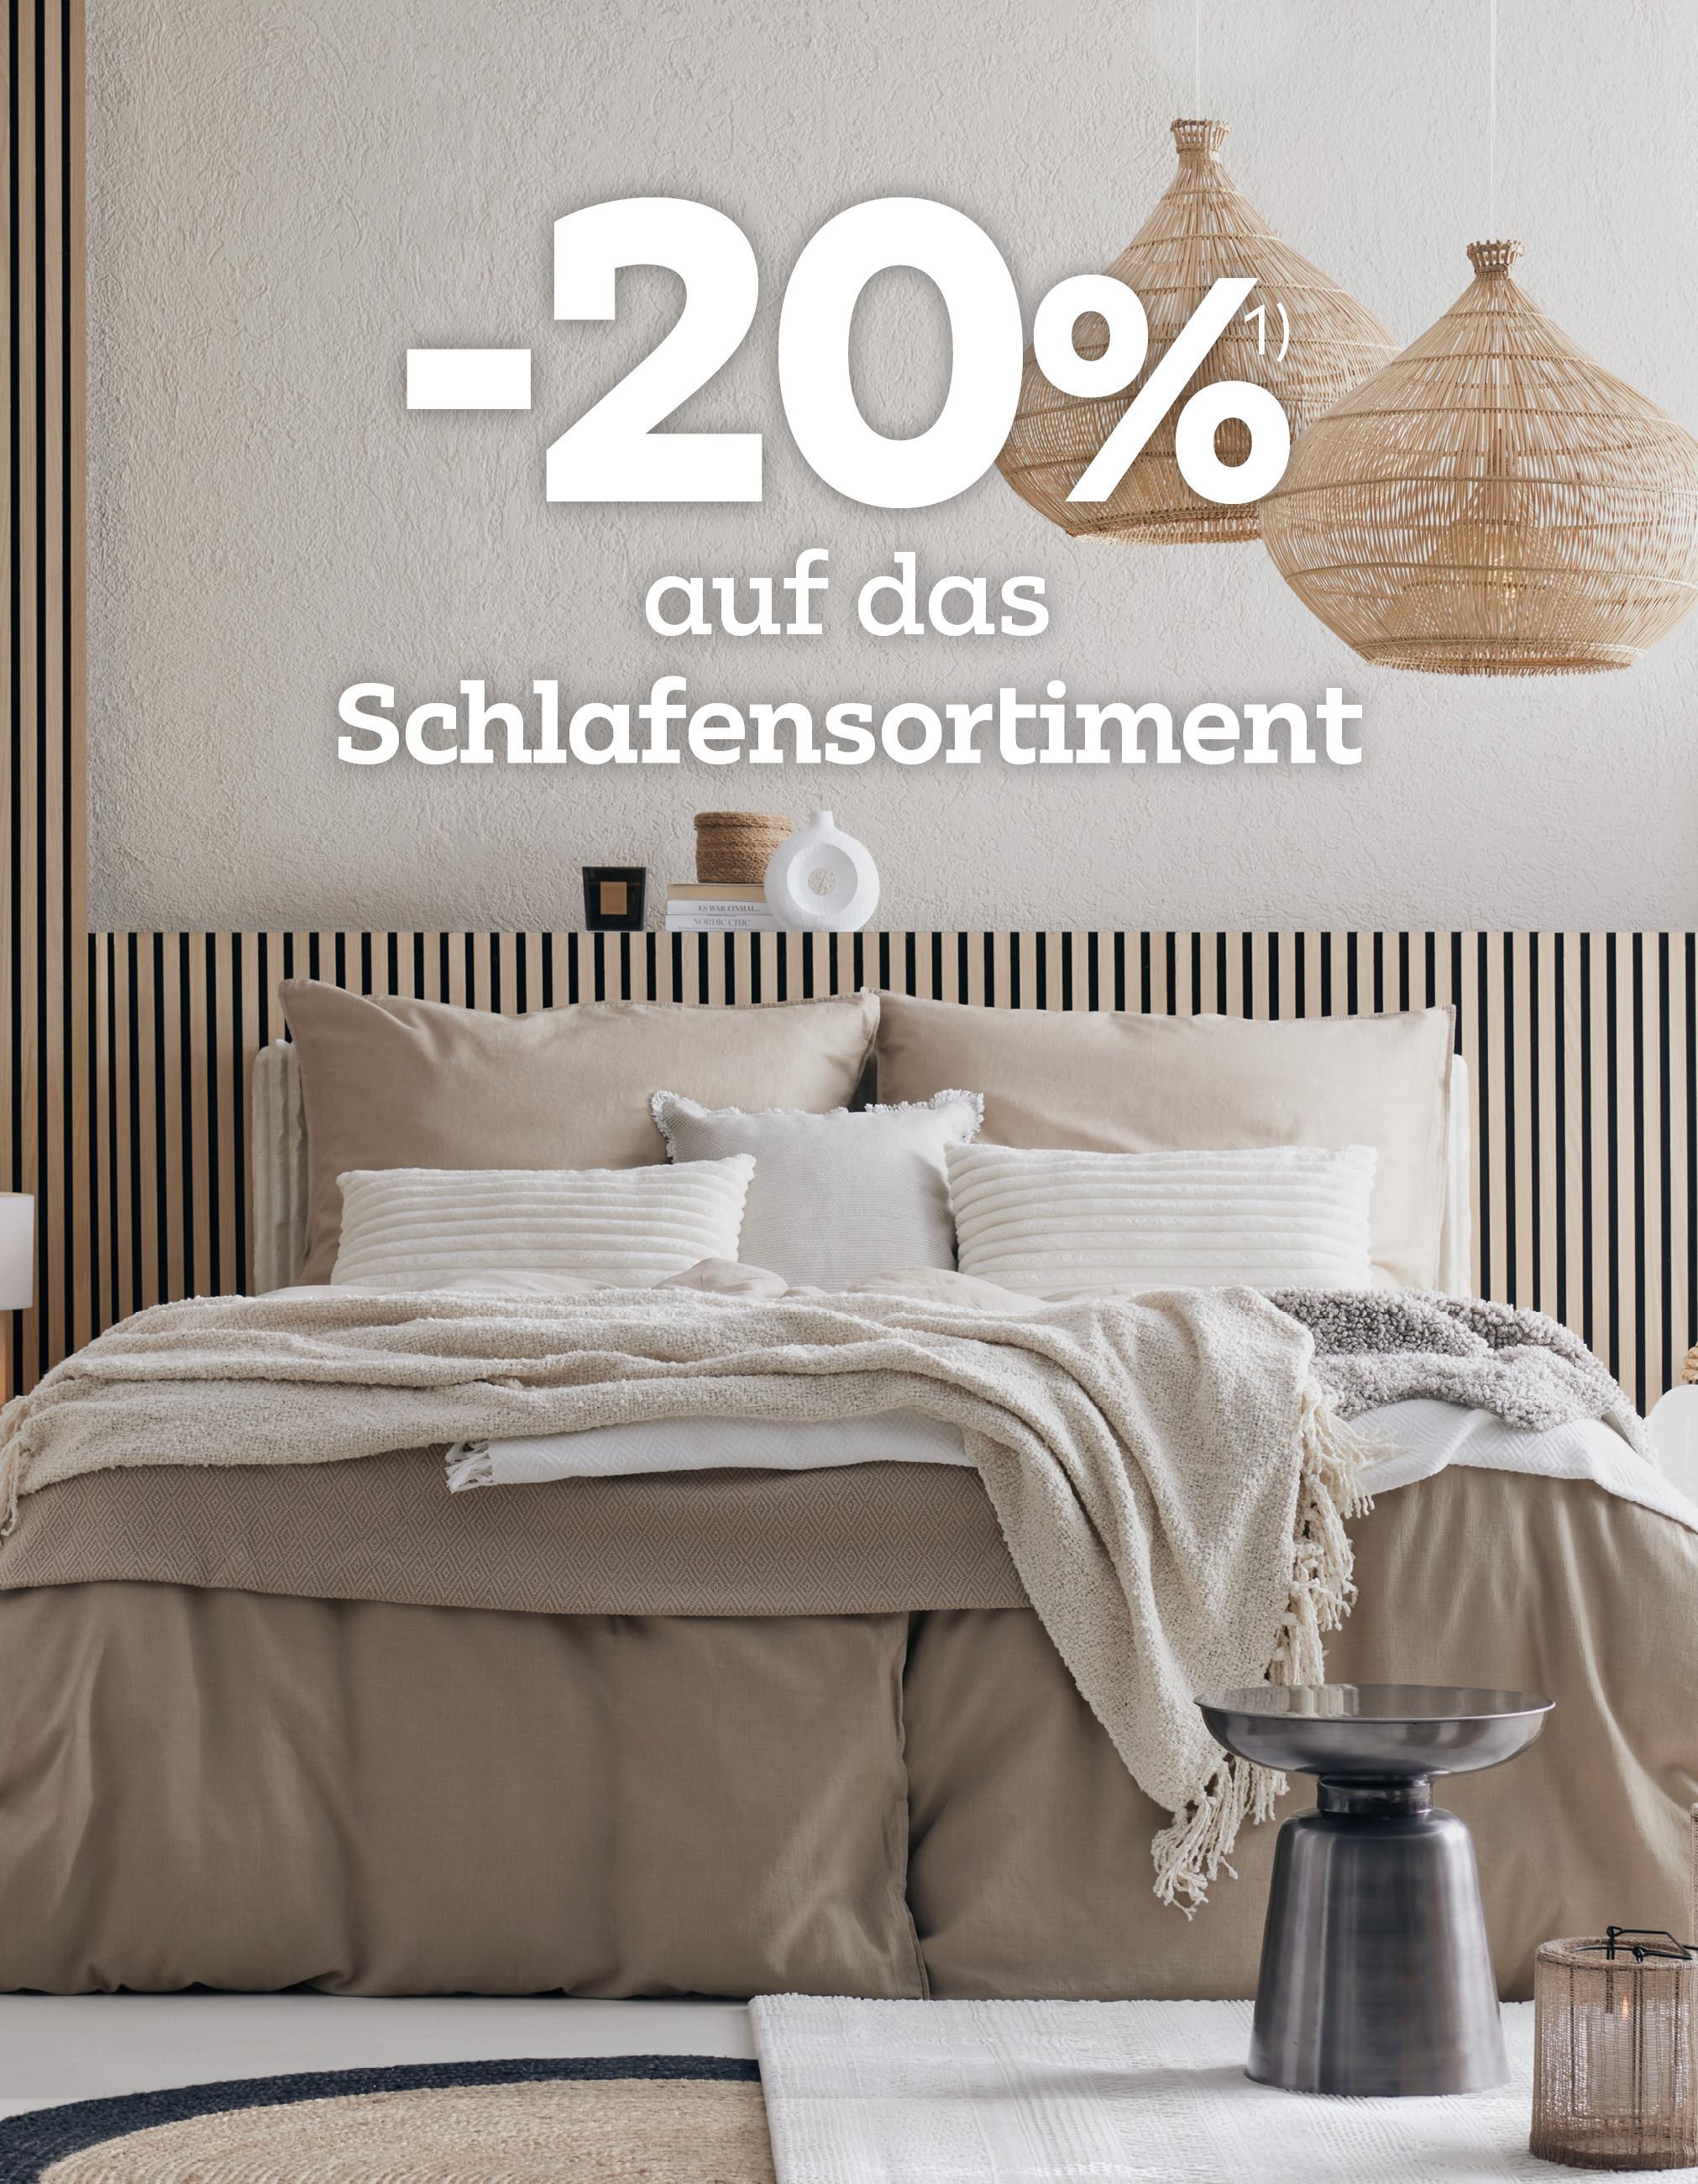 Regenschirm-Haken / Funny Wand hängen / bunte Wand-Dekor-Haken / dekorativ  Wand Haken / Modern Haken / Home Interior -  Schweiz